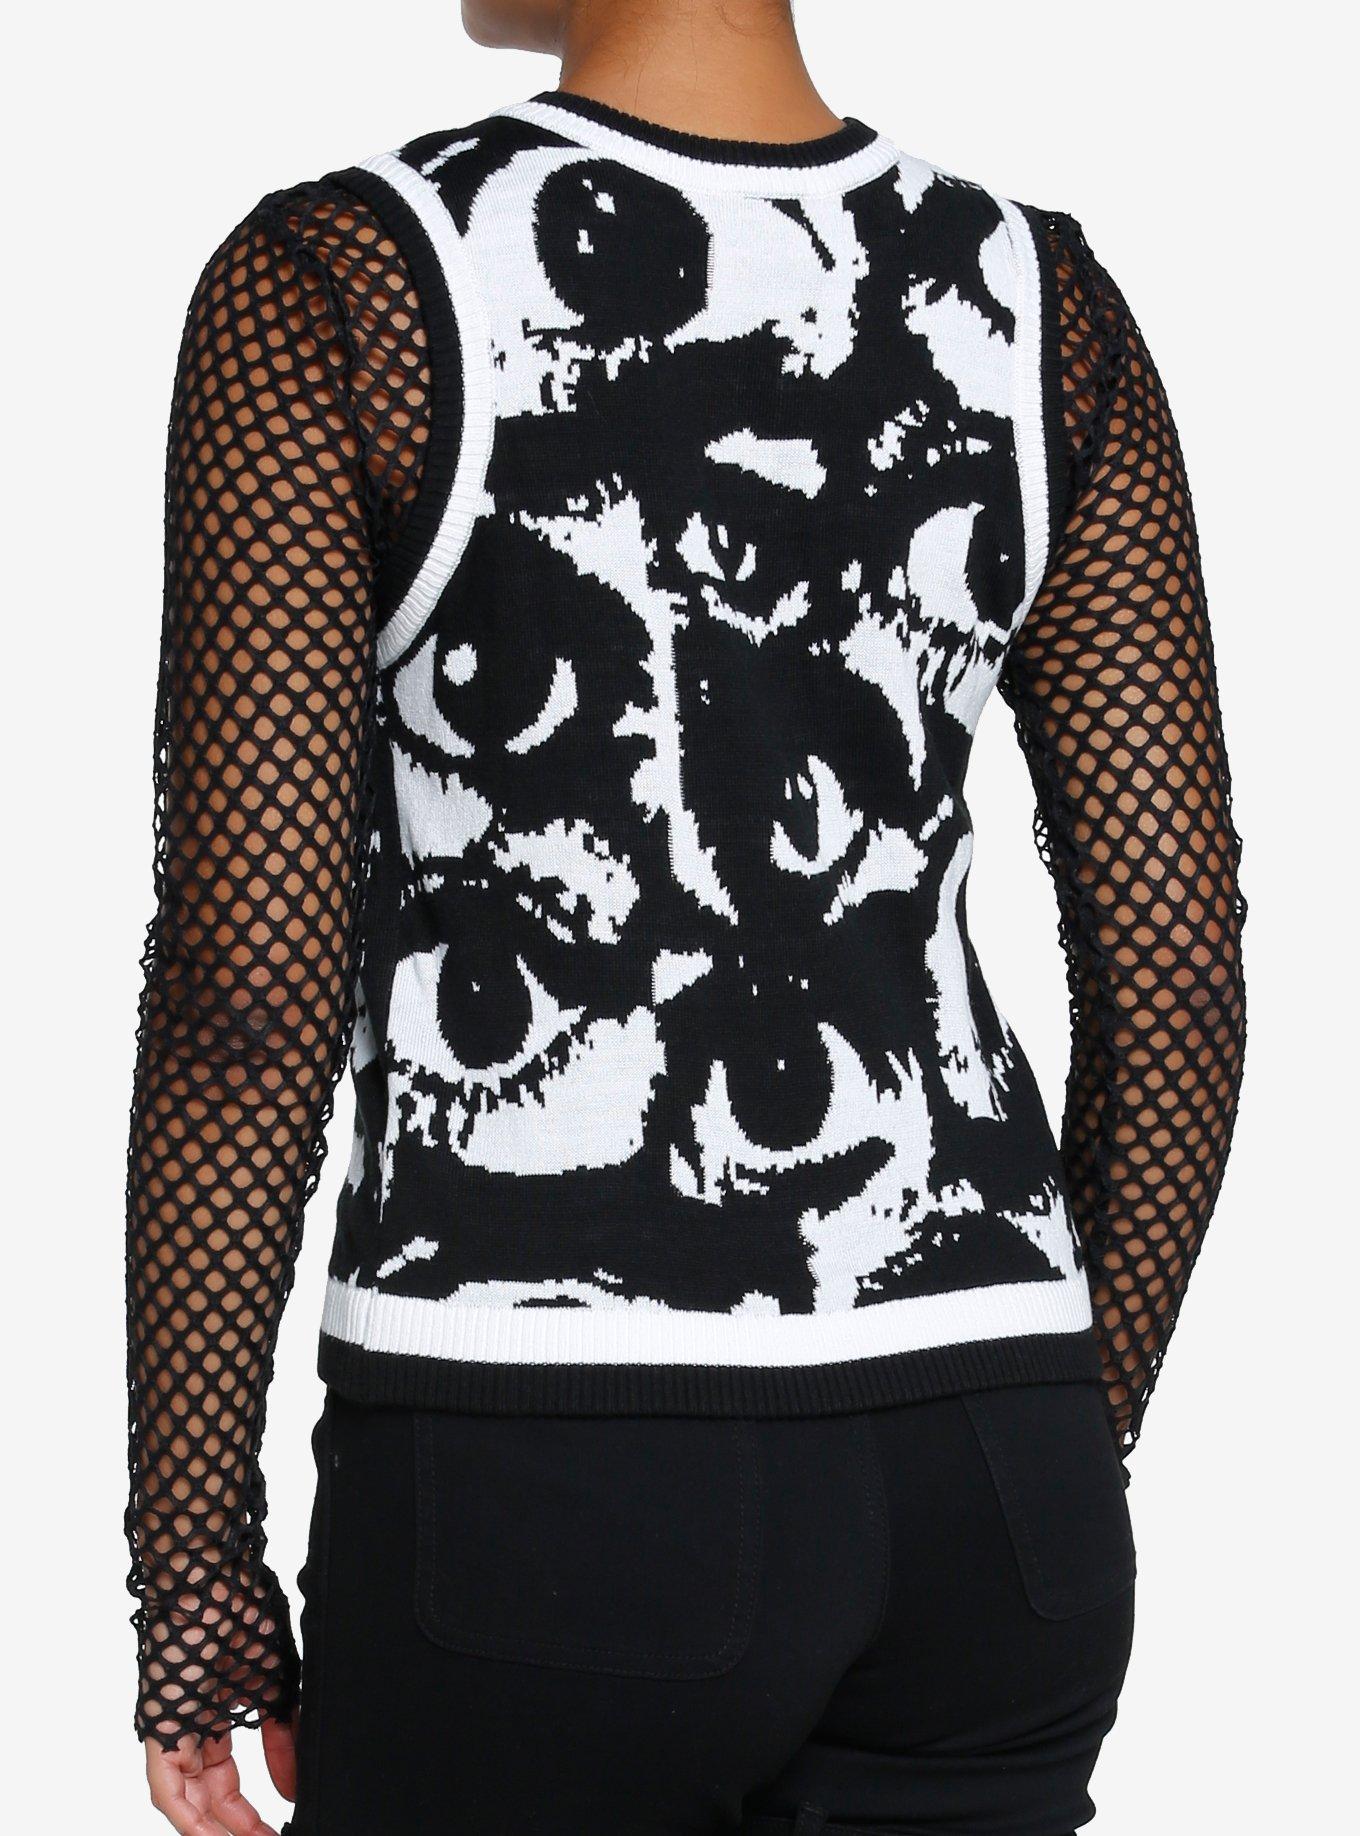 Black & White Allover Eyes Girls Sweater Vest, BLACK, alternate